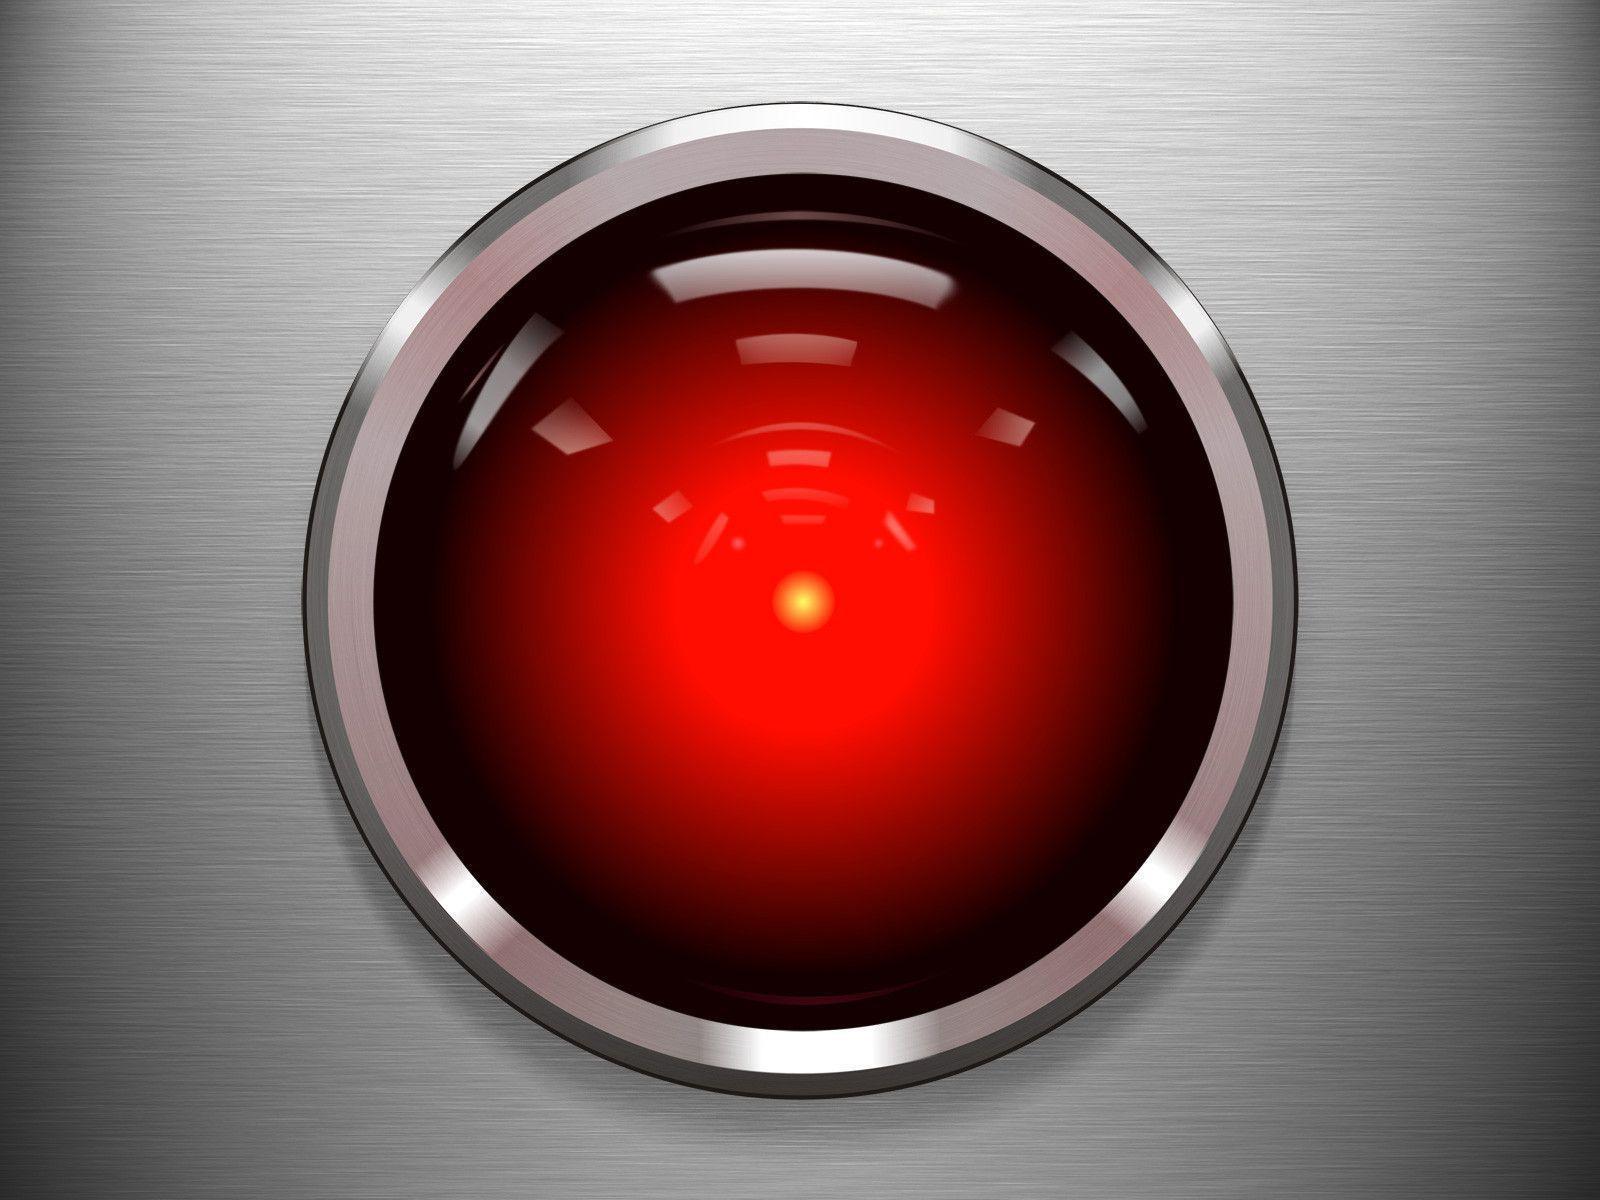 HAL 9000 eye